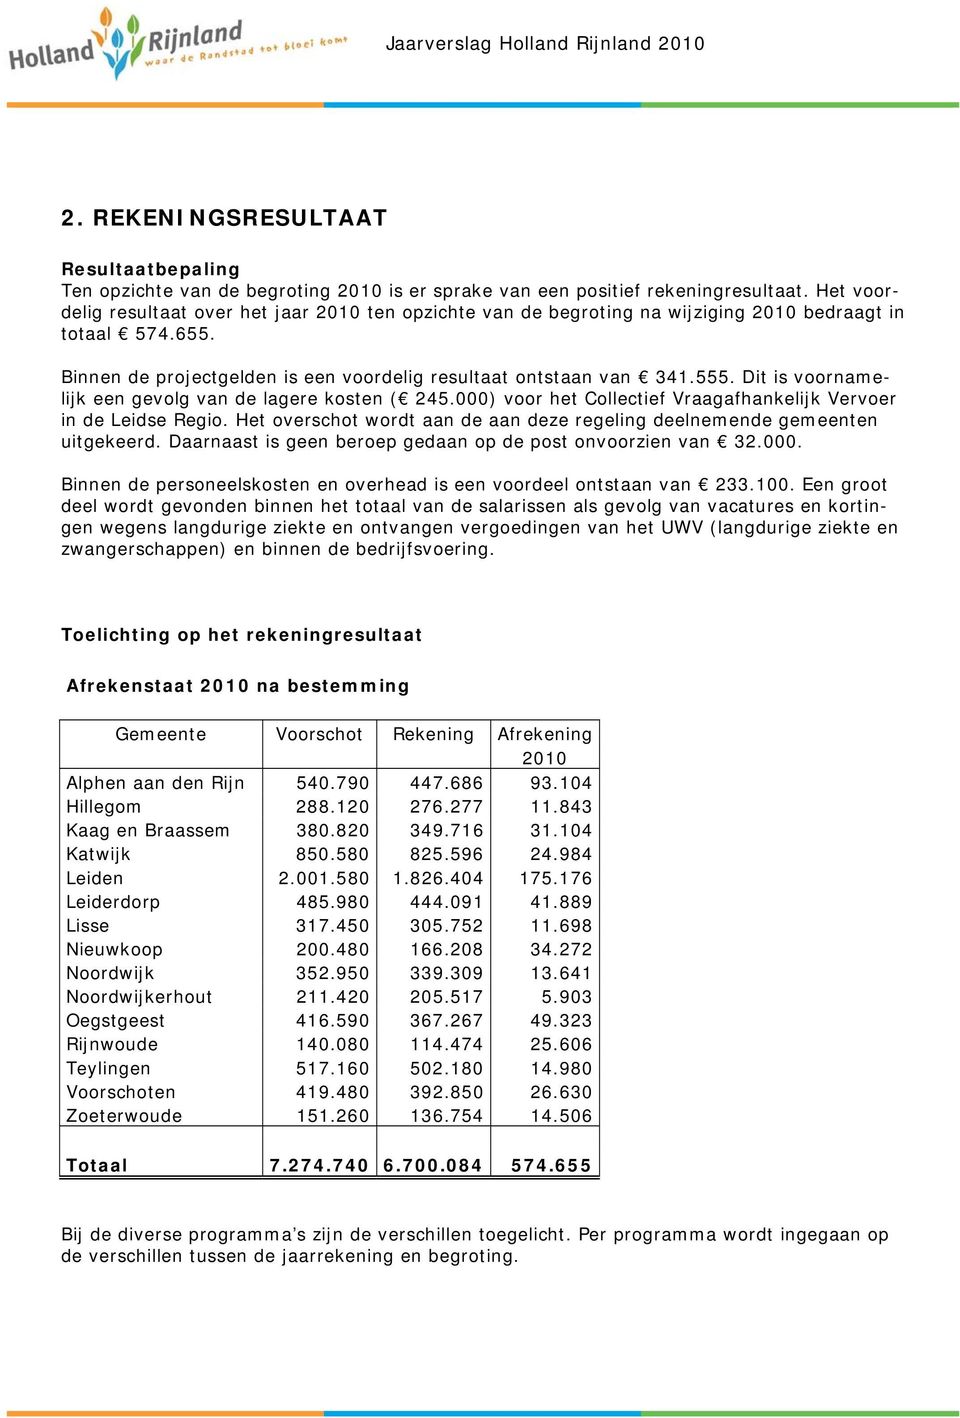 Dit is voornamelijk een gevolg van de lagere kosten ( 245.000) voor het Collectief Vraagafhankelijk Vervoer in de Leidse Regio.